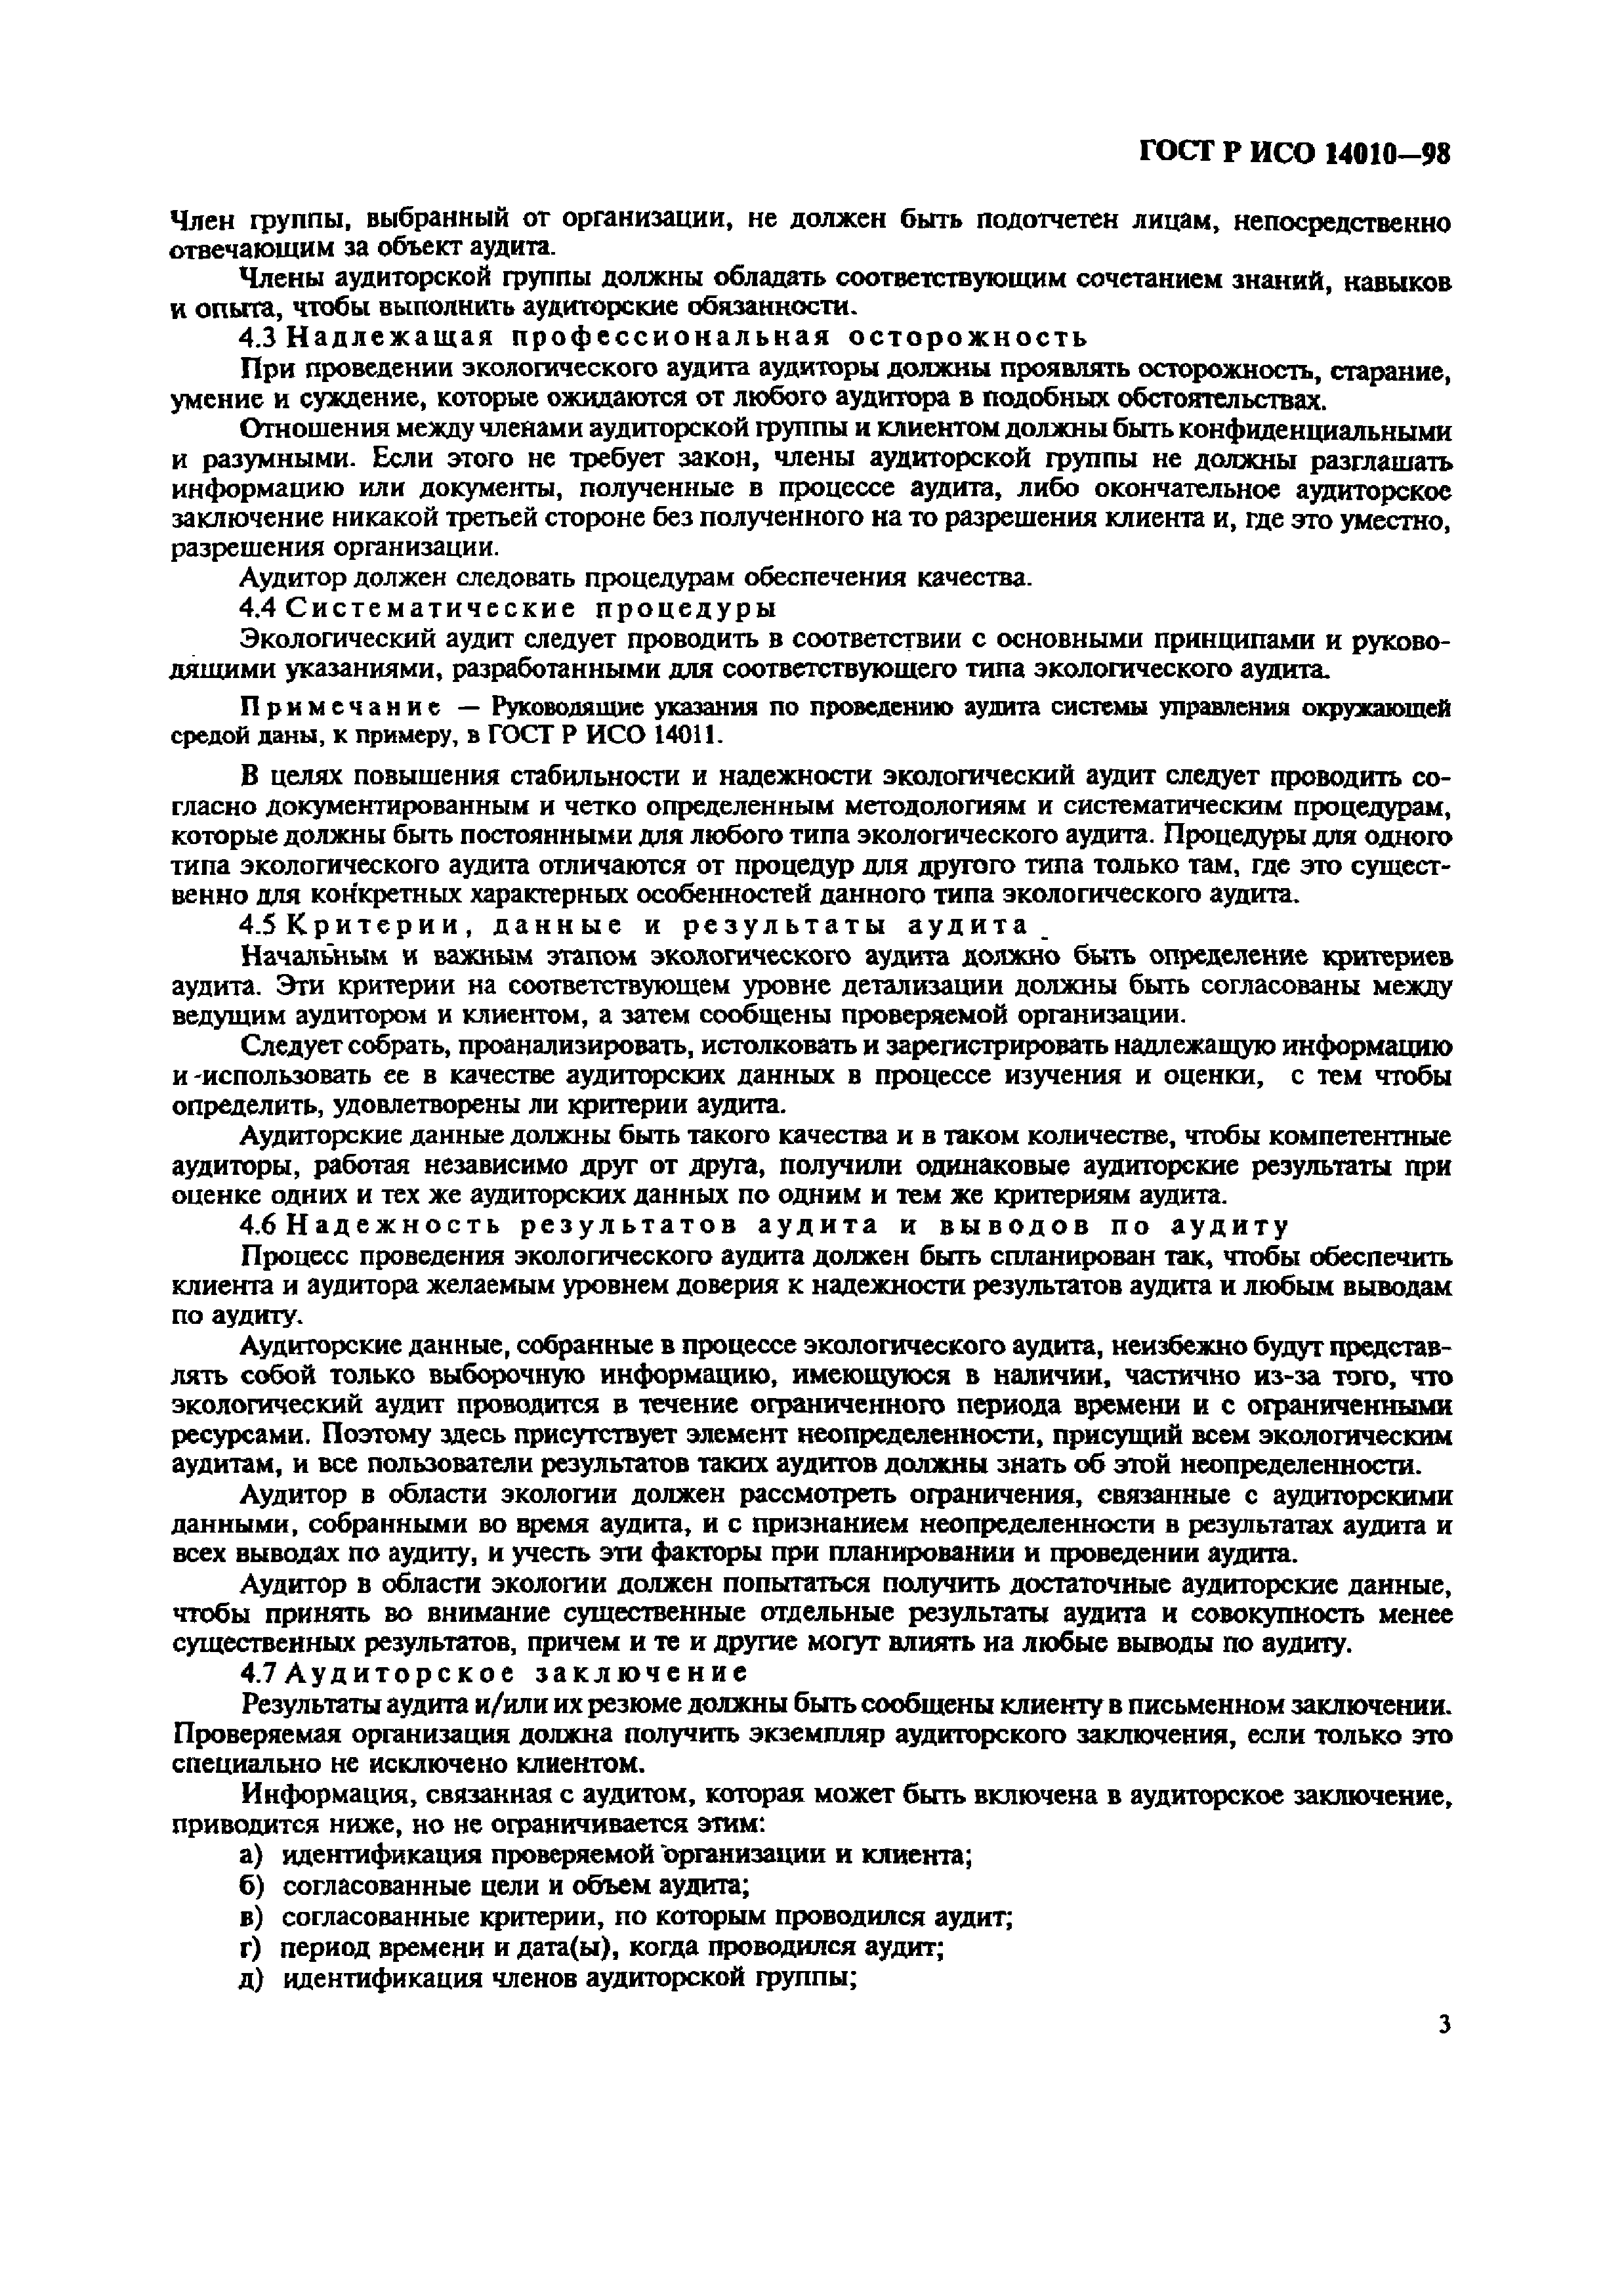 ГОСТ Р ИСО 14010-98